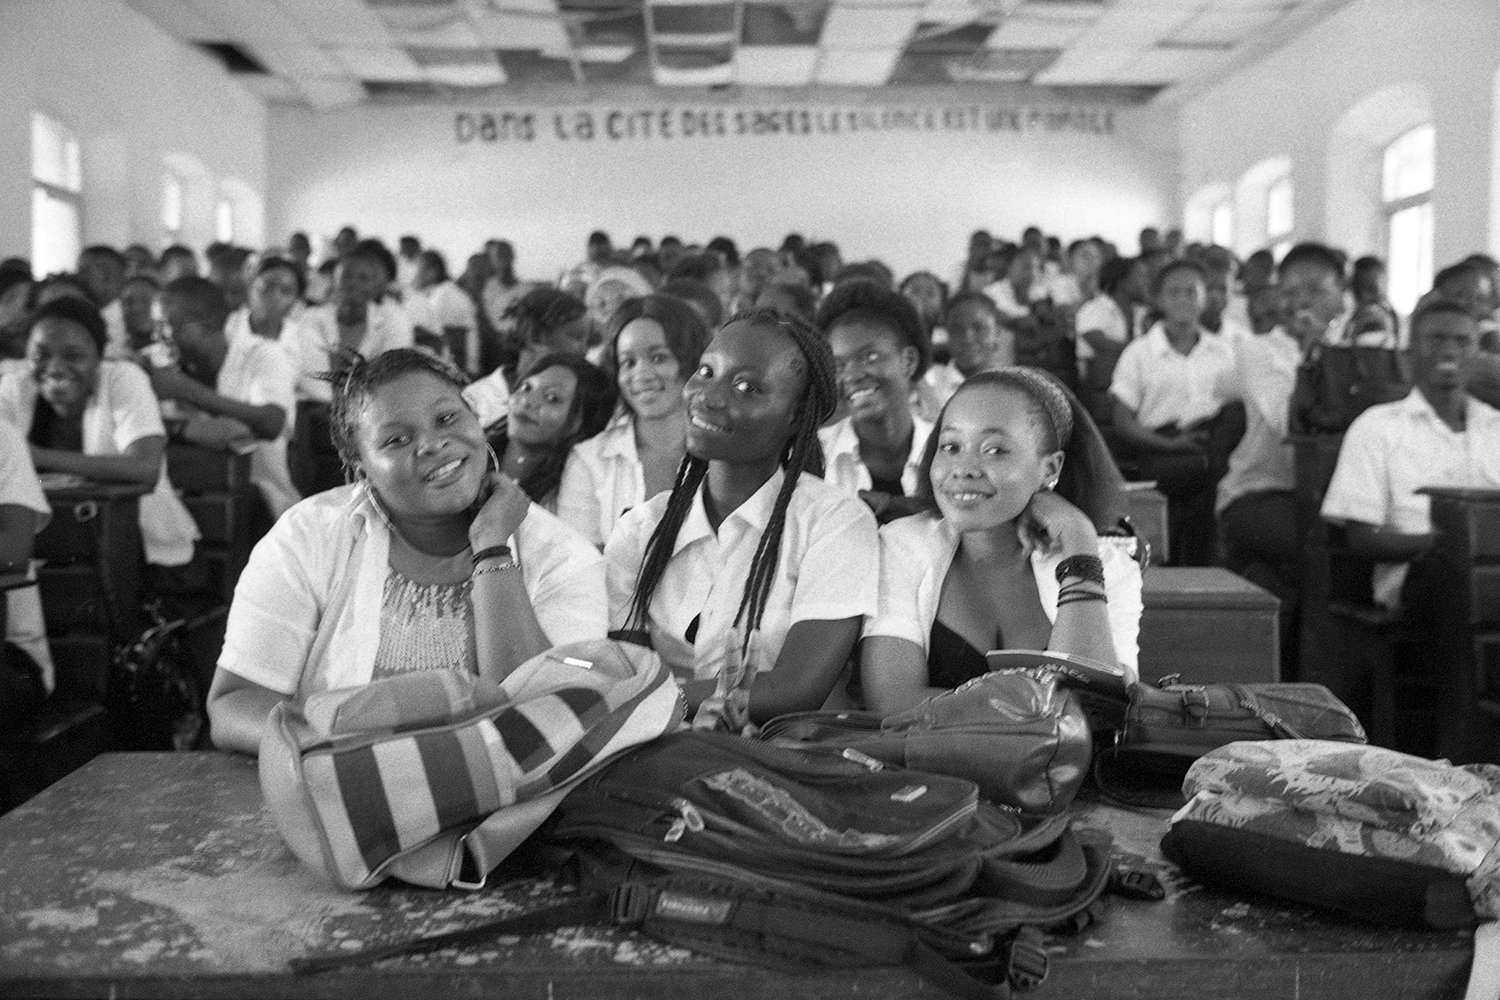 Les élèves du lycée du 1er octobre à Conakry rencontrés pour les élèves de l’école Léon Bourgeois à Colombes et ceux du collège Notre Dame de Sion à Paris 6e.